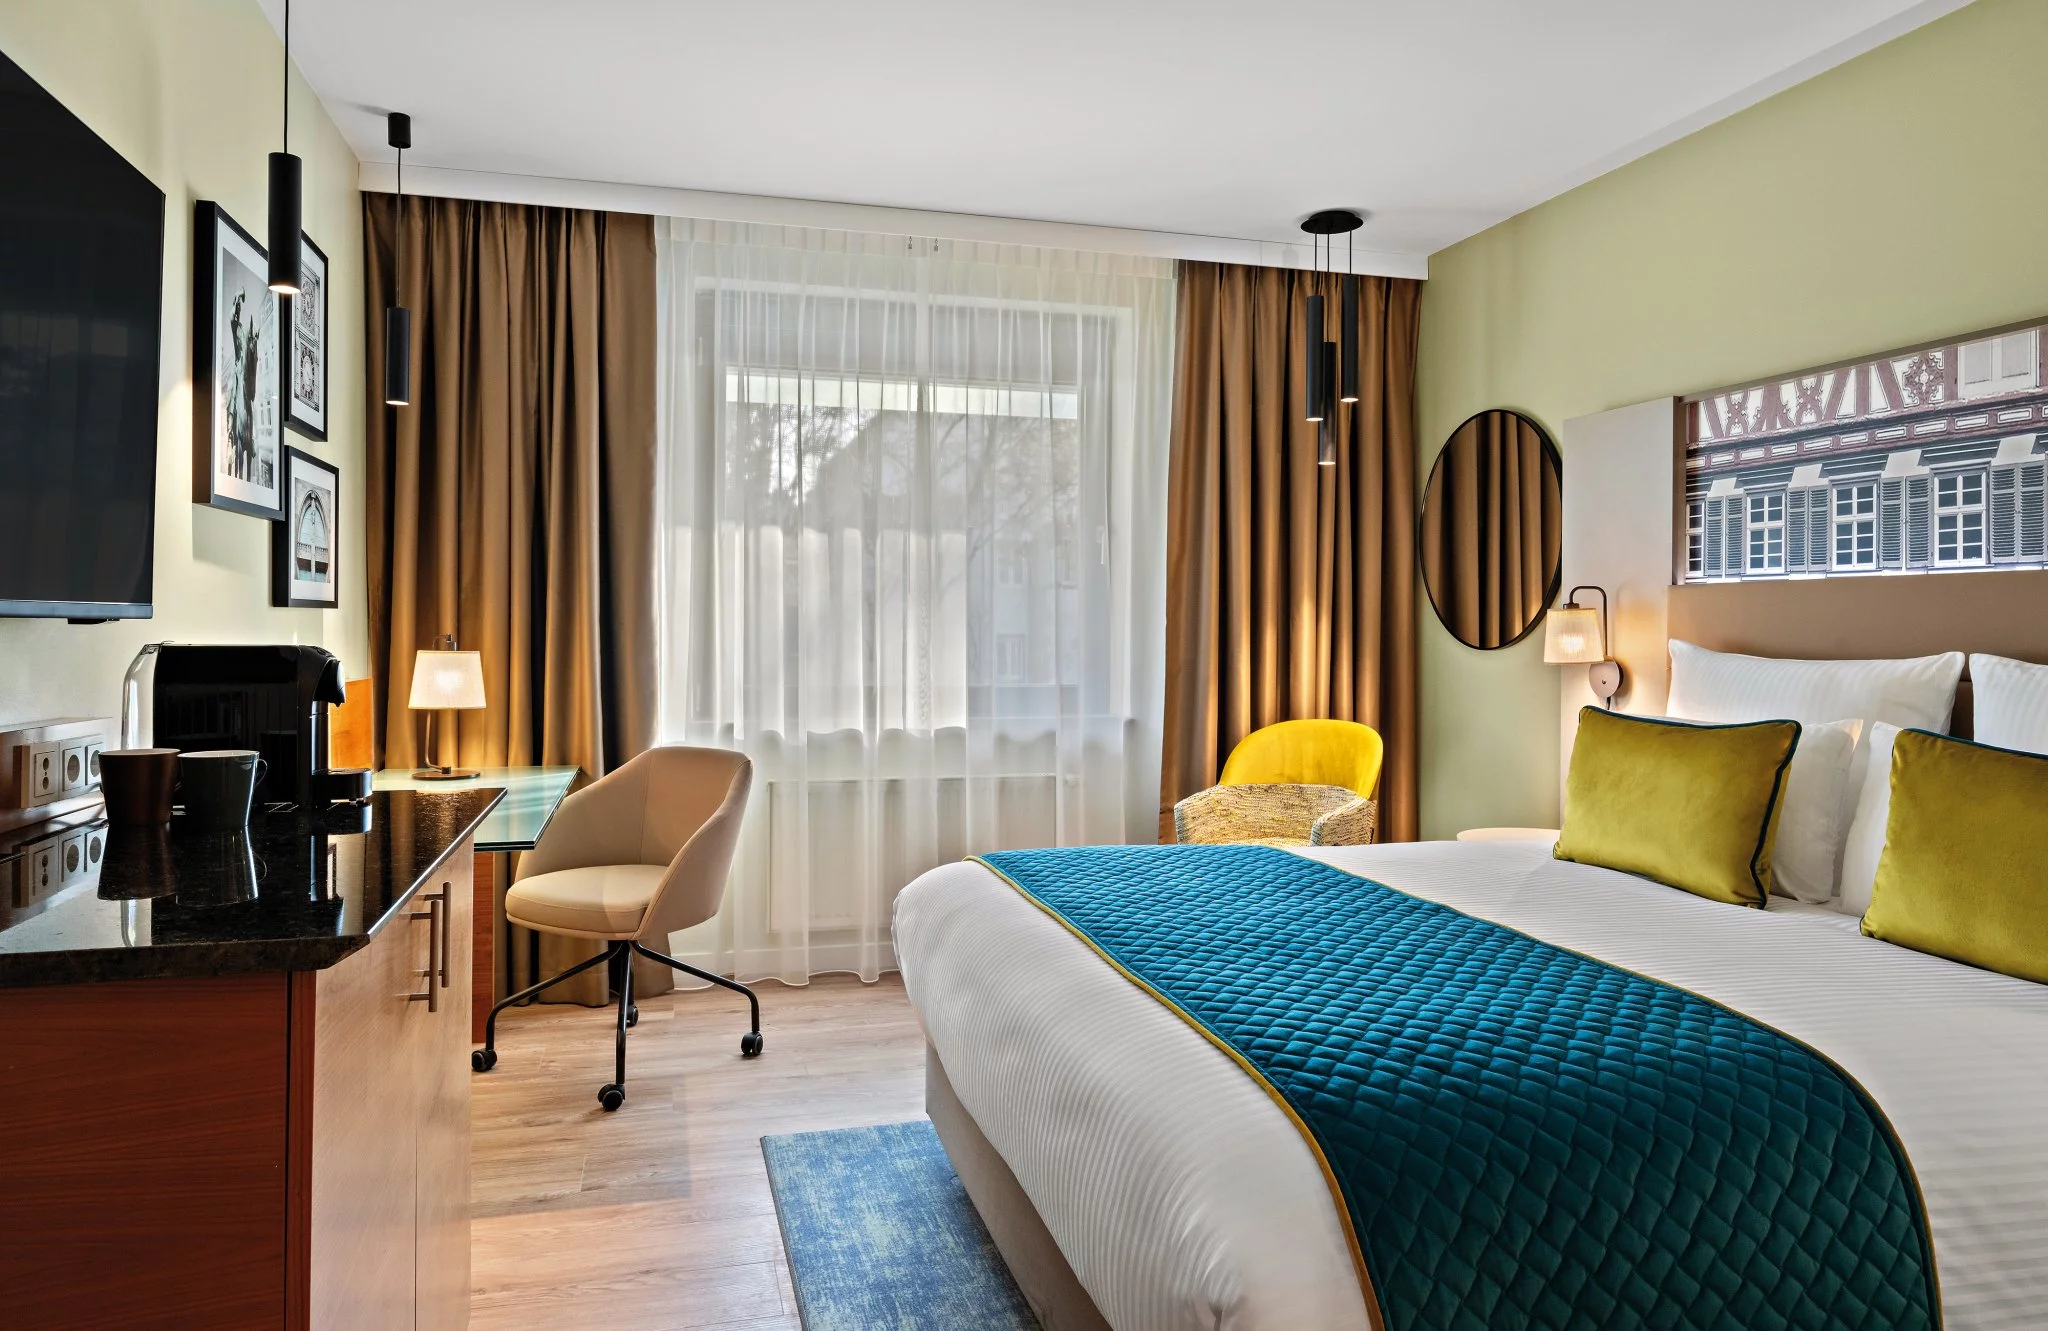 Leonardo Hotel Esslingen - Comfort Double Room